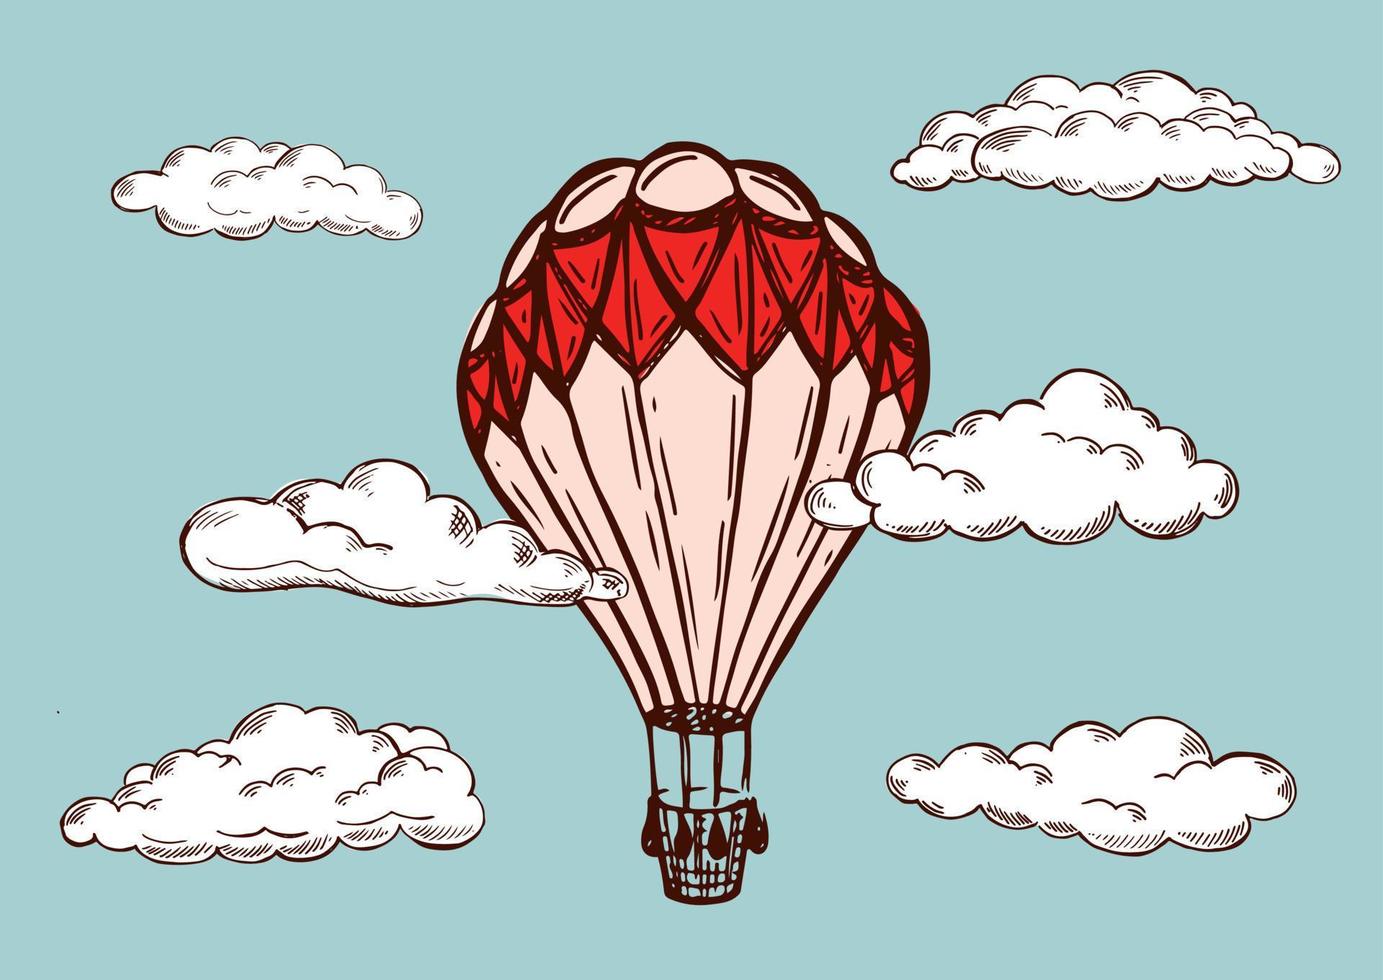 hete lucht ballonnen vliegen, met de hand getekende illustratie. vector